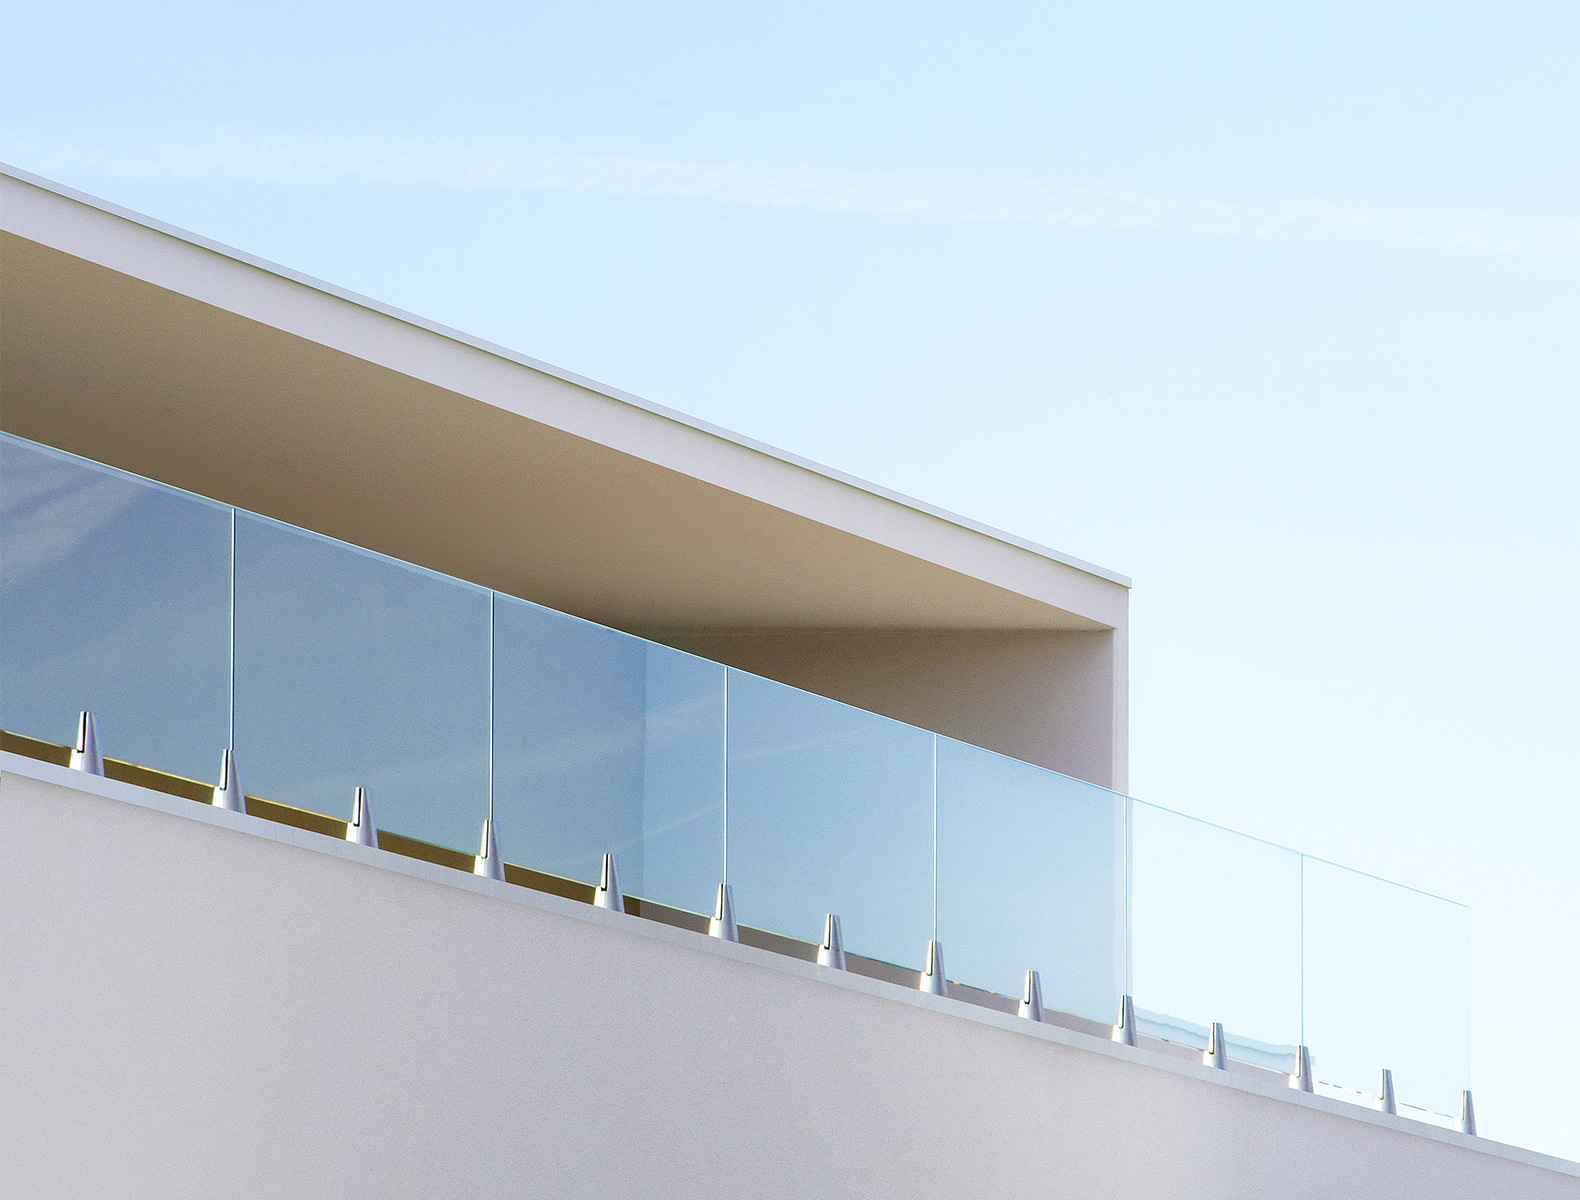 Photographie zoomé en contre plongé d'un vitrage pour terrasse et auvent béton blanc